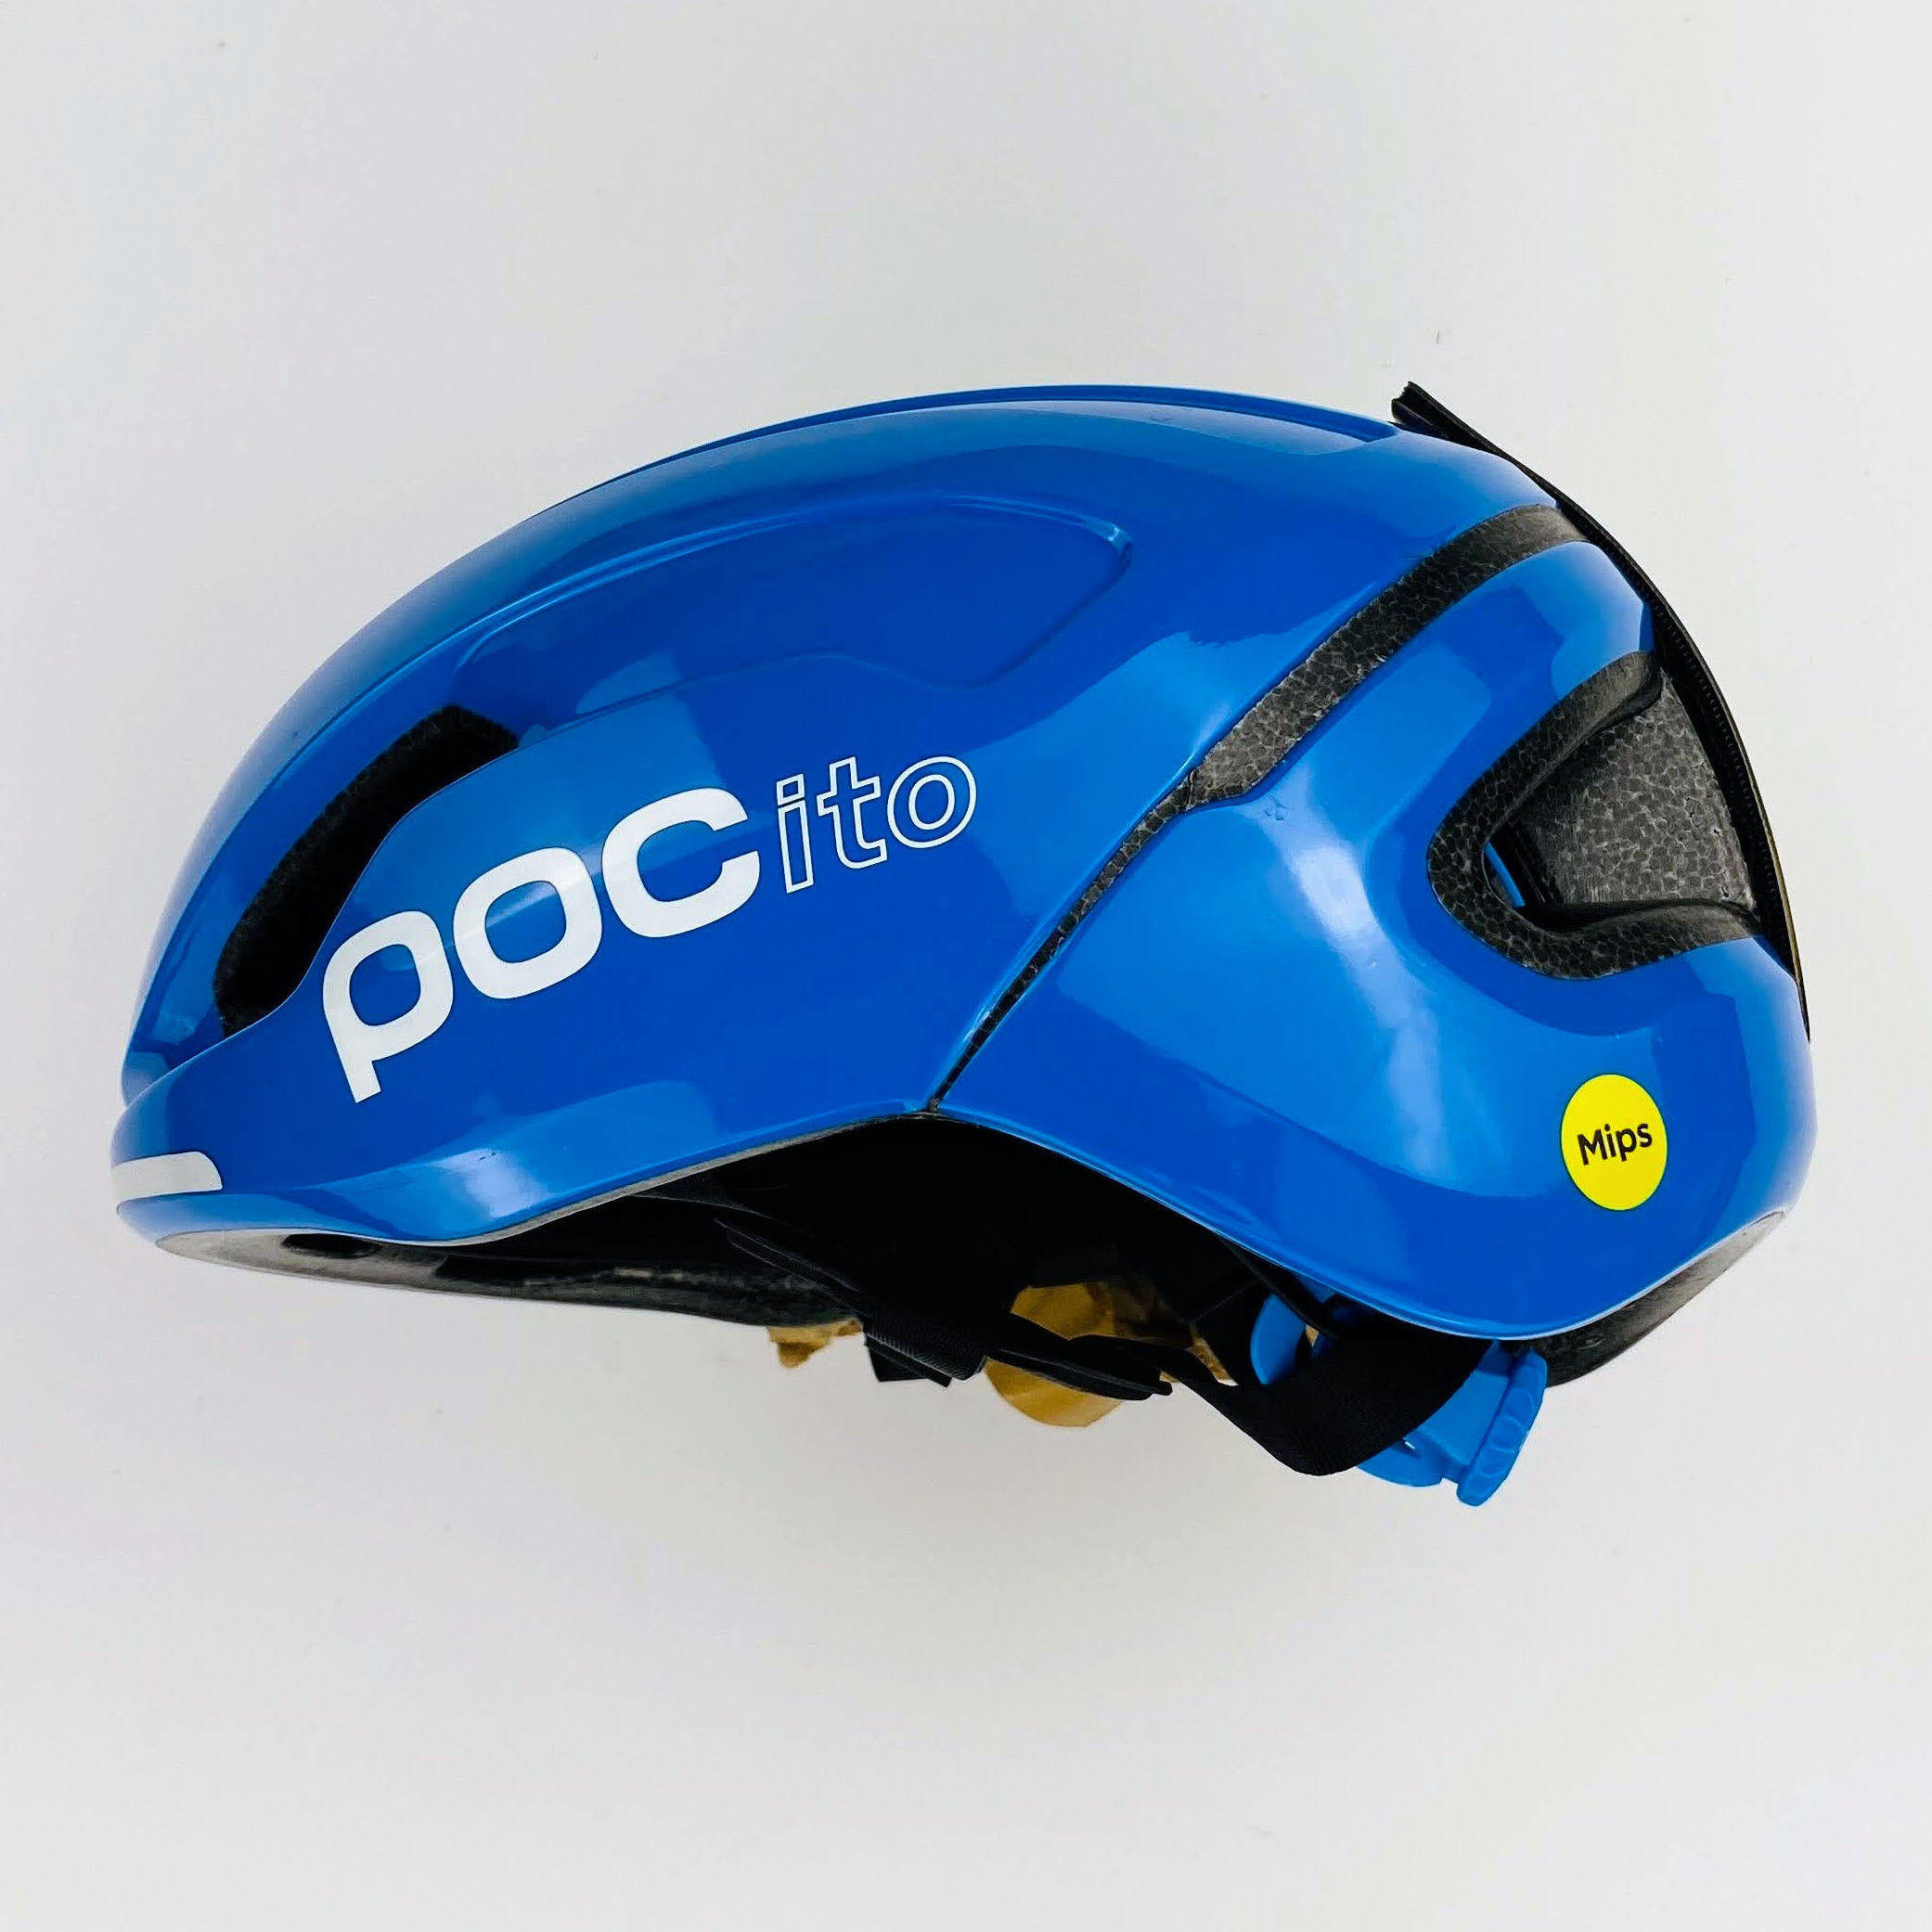 Poc Pocito Omne MIPS - Casco per bici - Bambino di seconda mano - Blu - 48-52 cm | Hardloop